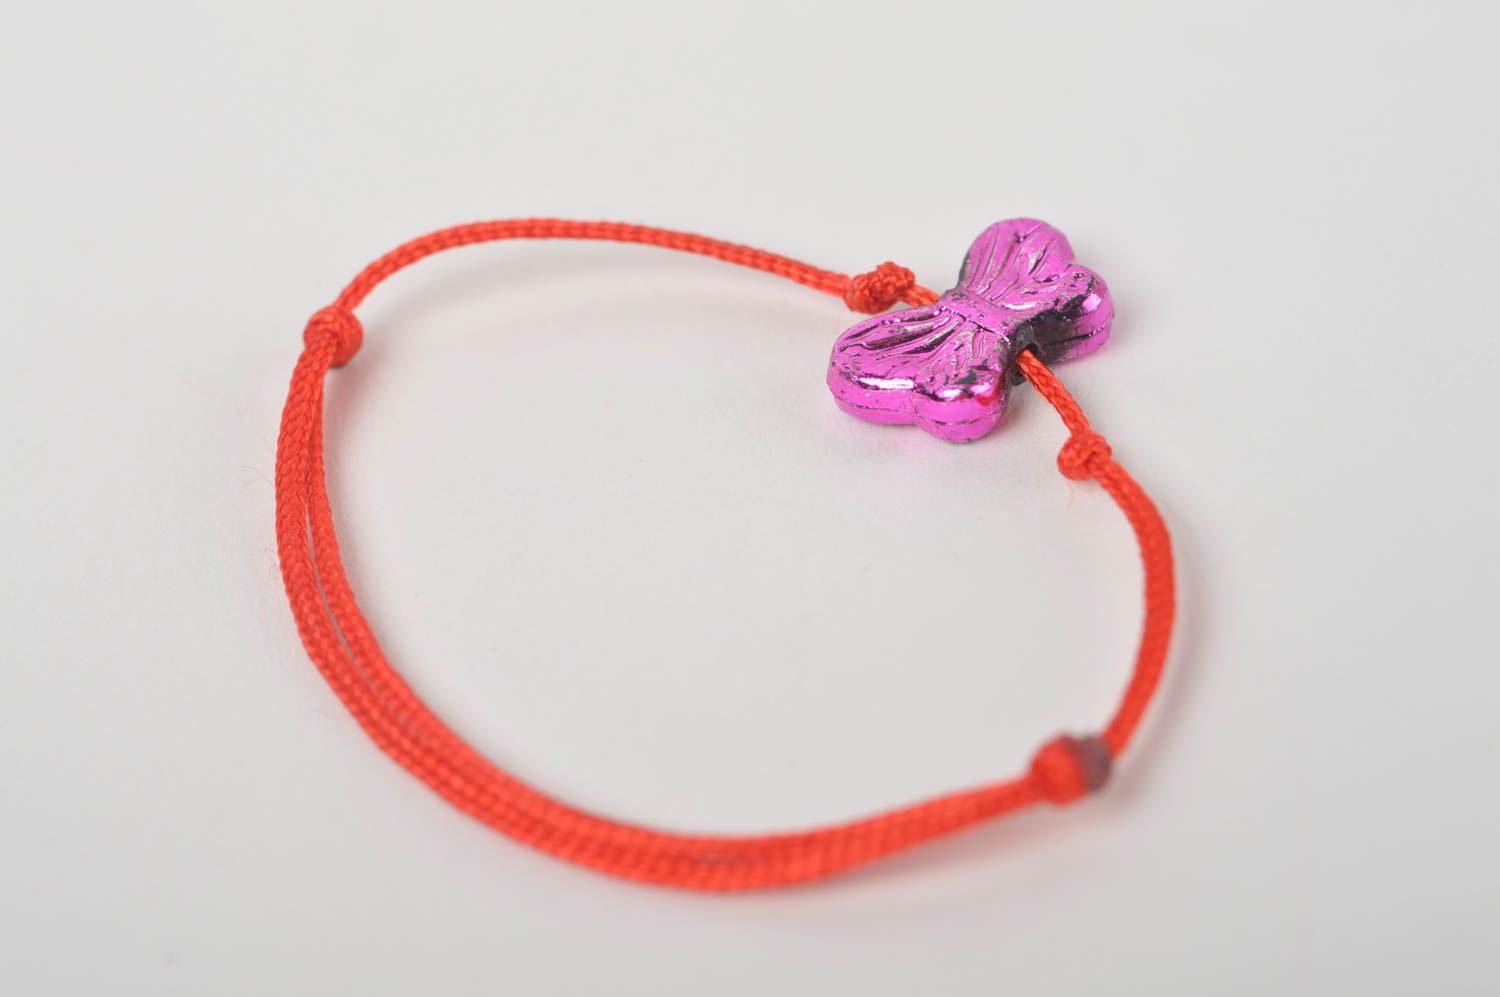 Textil Armband handgemacht Mode Schmuck in Rot wunderschön Geschenk für Mädchen foto 5